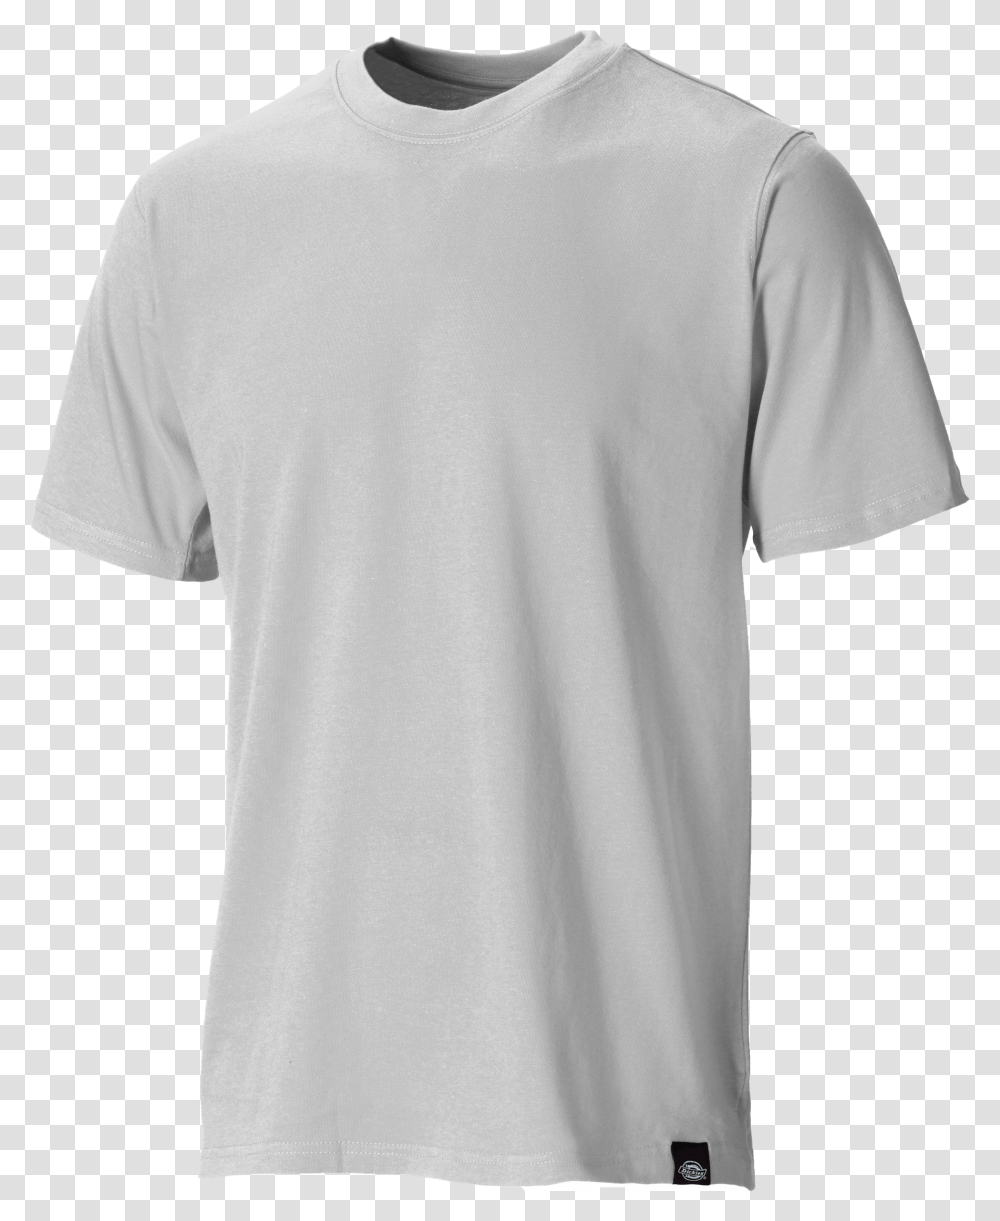 Plain Grey T Shirt Picture Plain Light Grey T Shirt Transparent Png